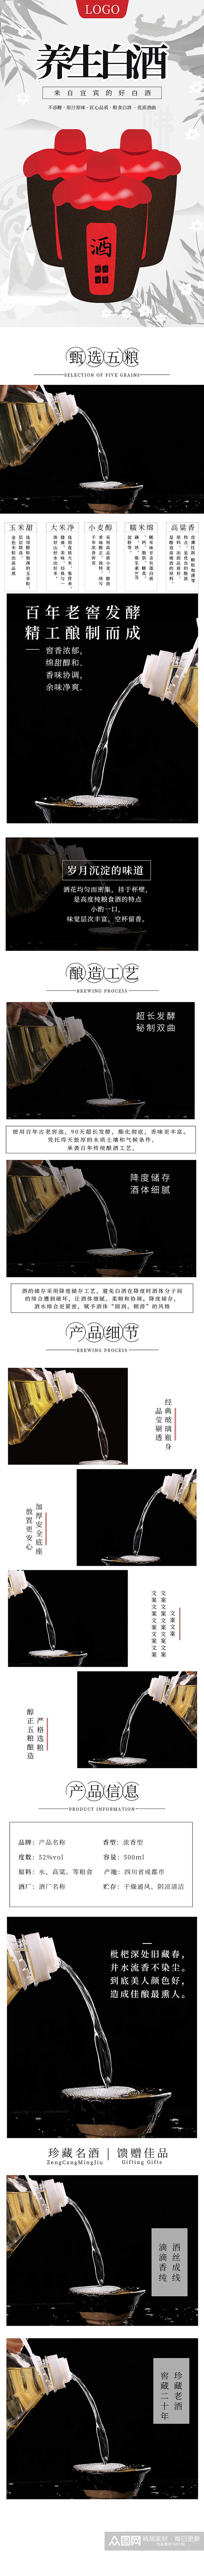 食品茶饮中国风养生白酒详情页素材